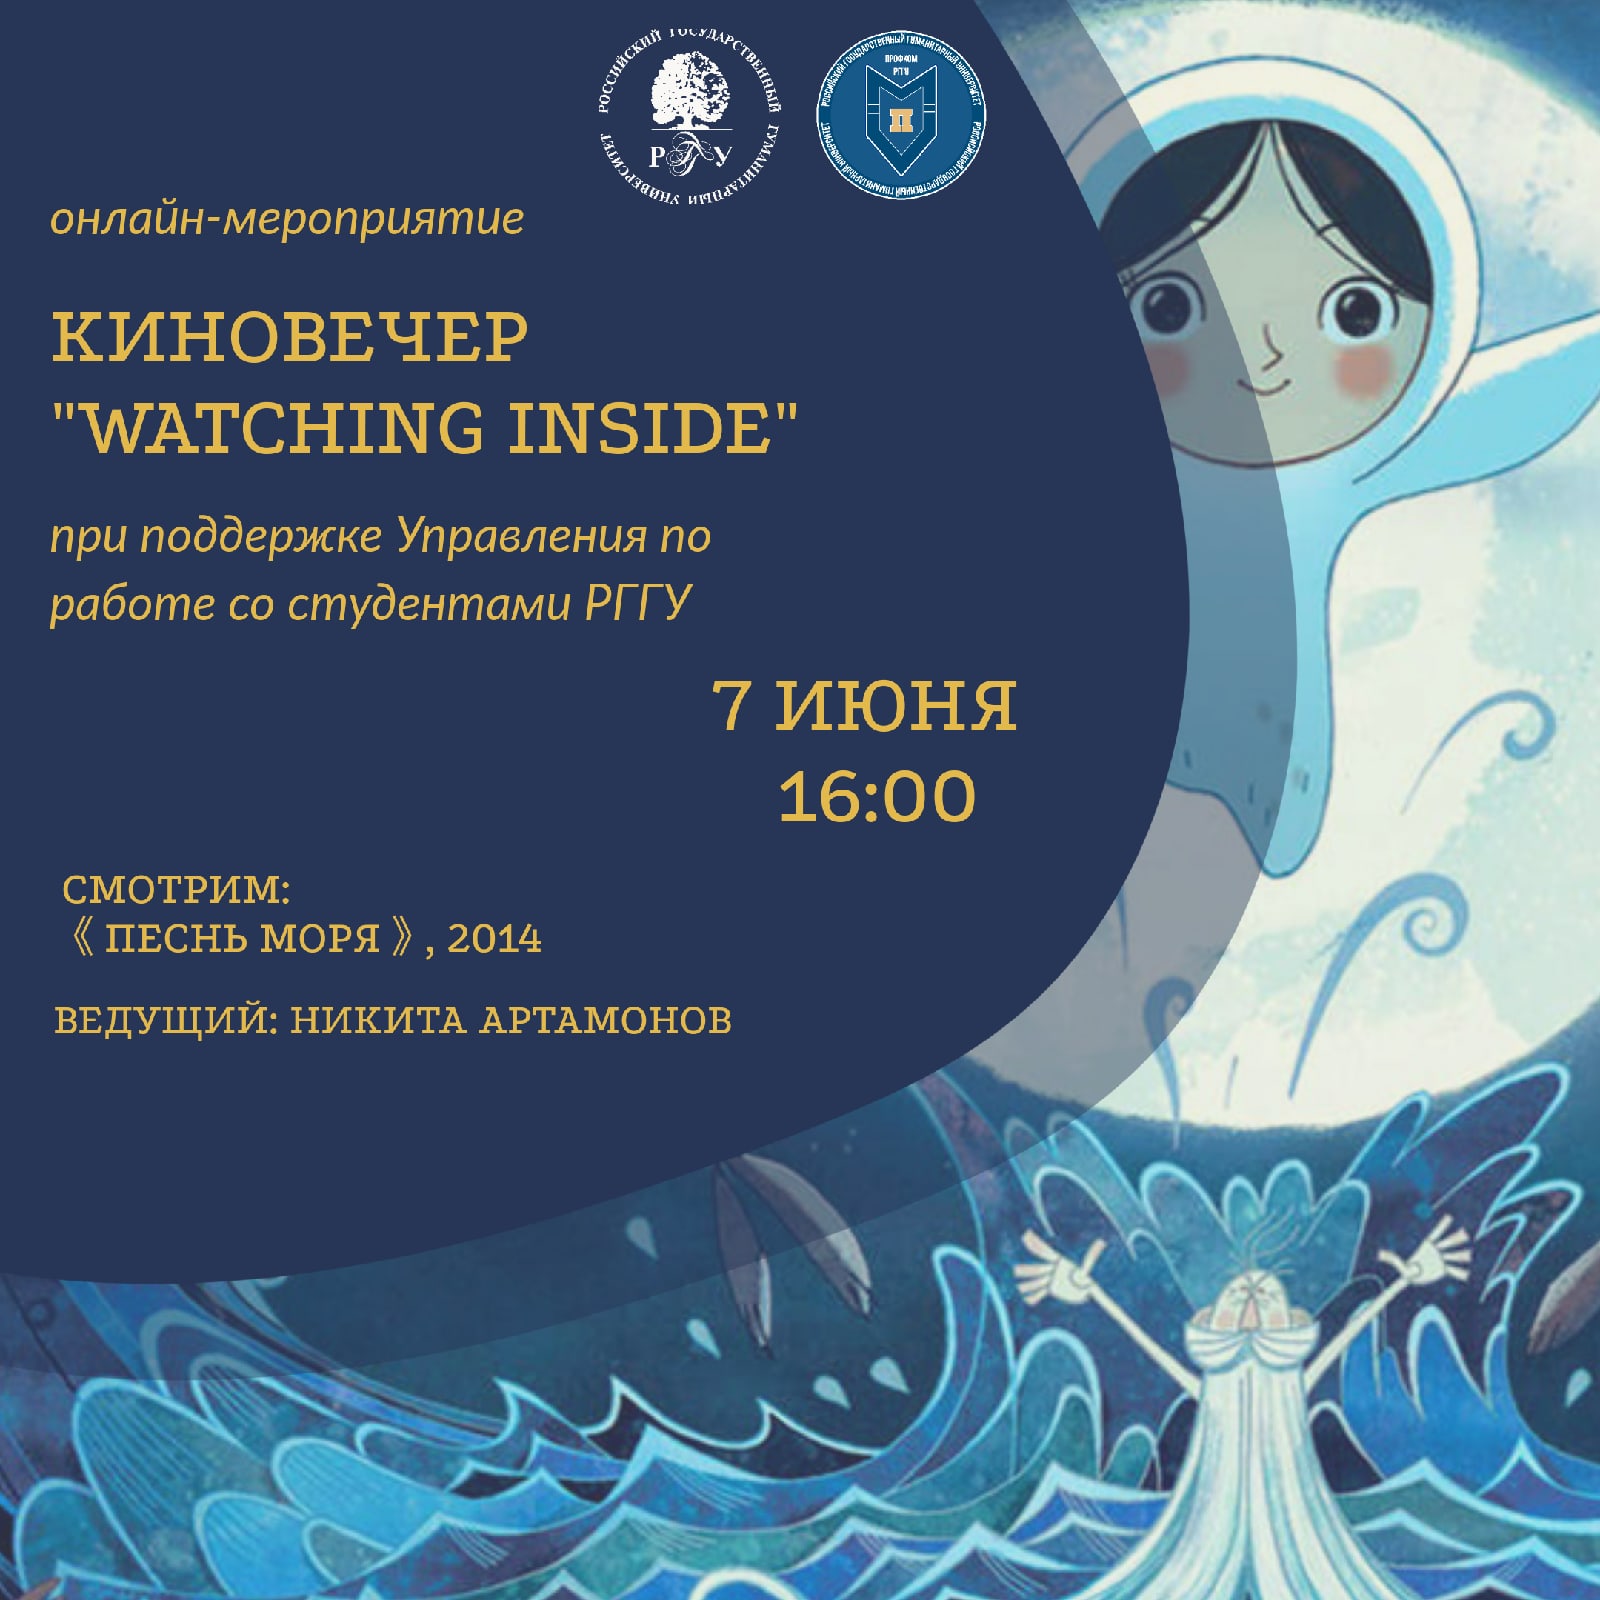 В РГГУ пройдёт онлайн киновечер "WATCHING INSIDE"